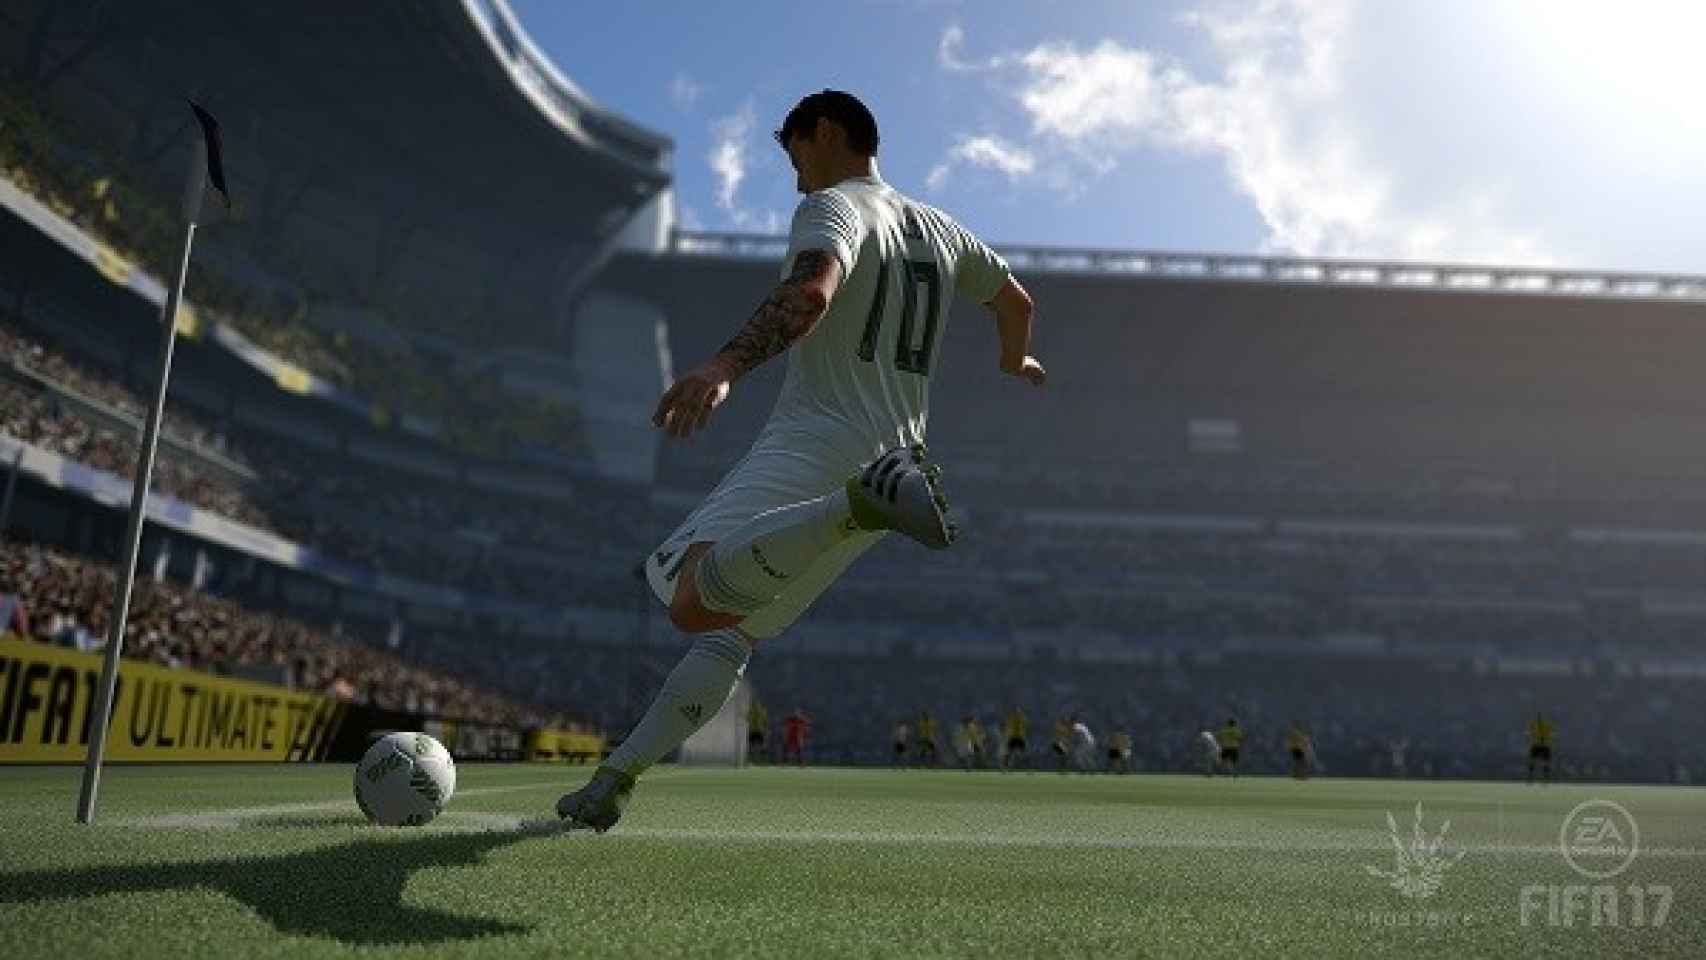 Imagen de Fifa 17 presentada en la conferencia de Electronic Arts en el E3 2016.